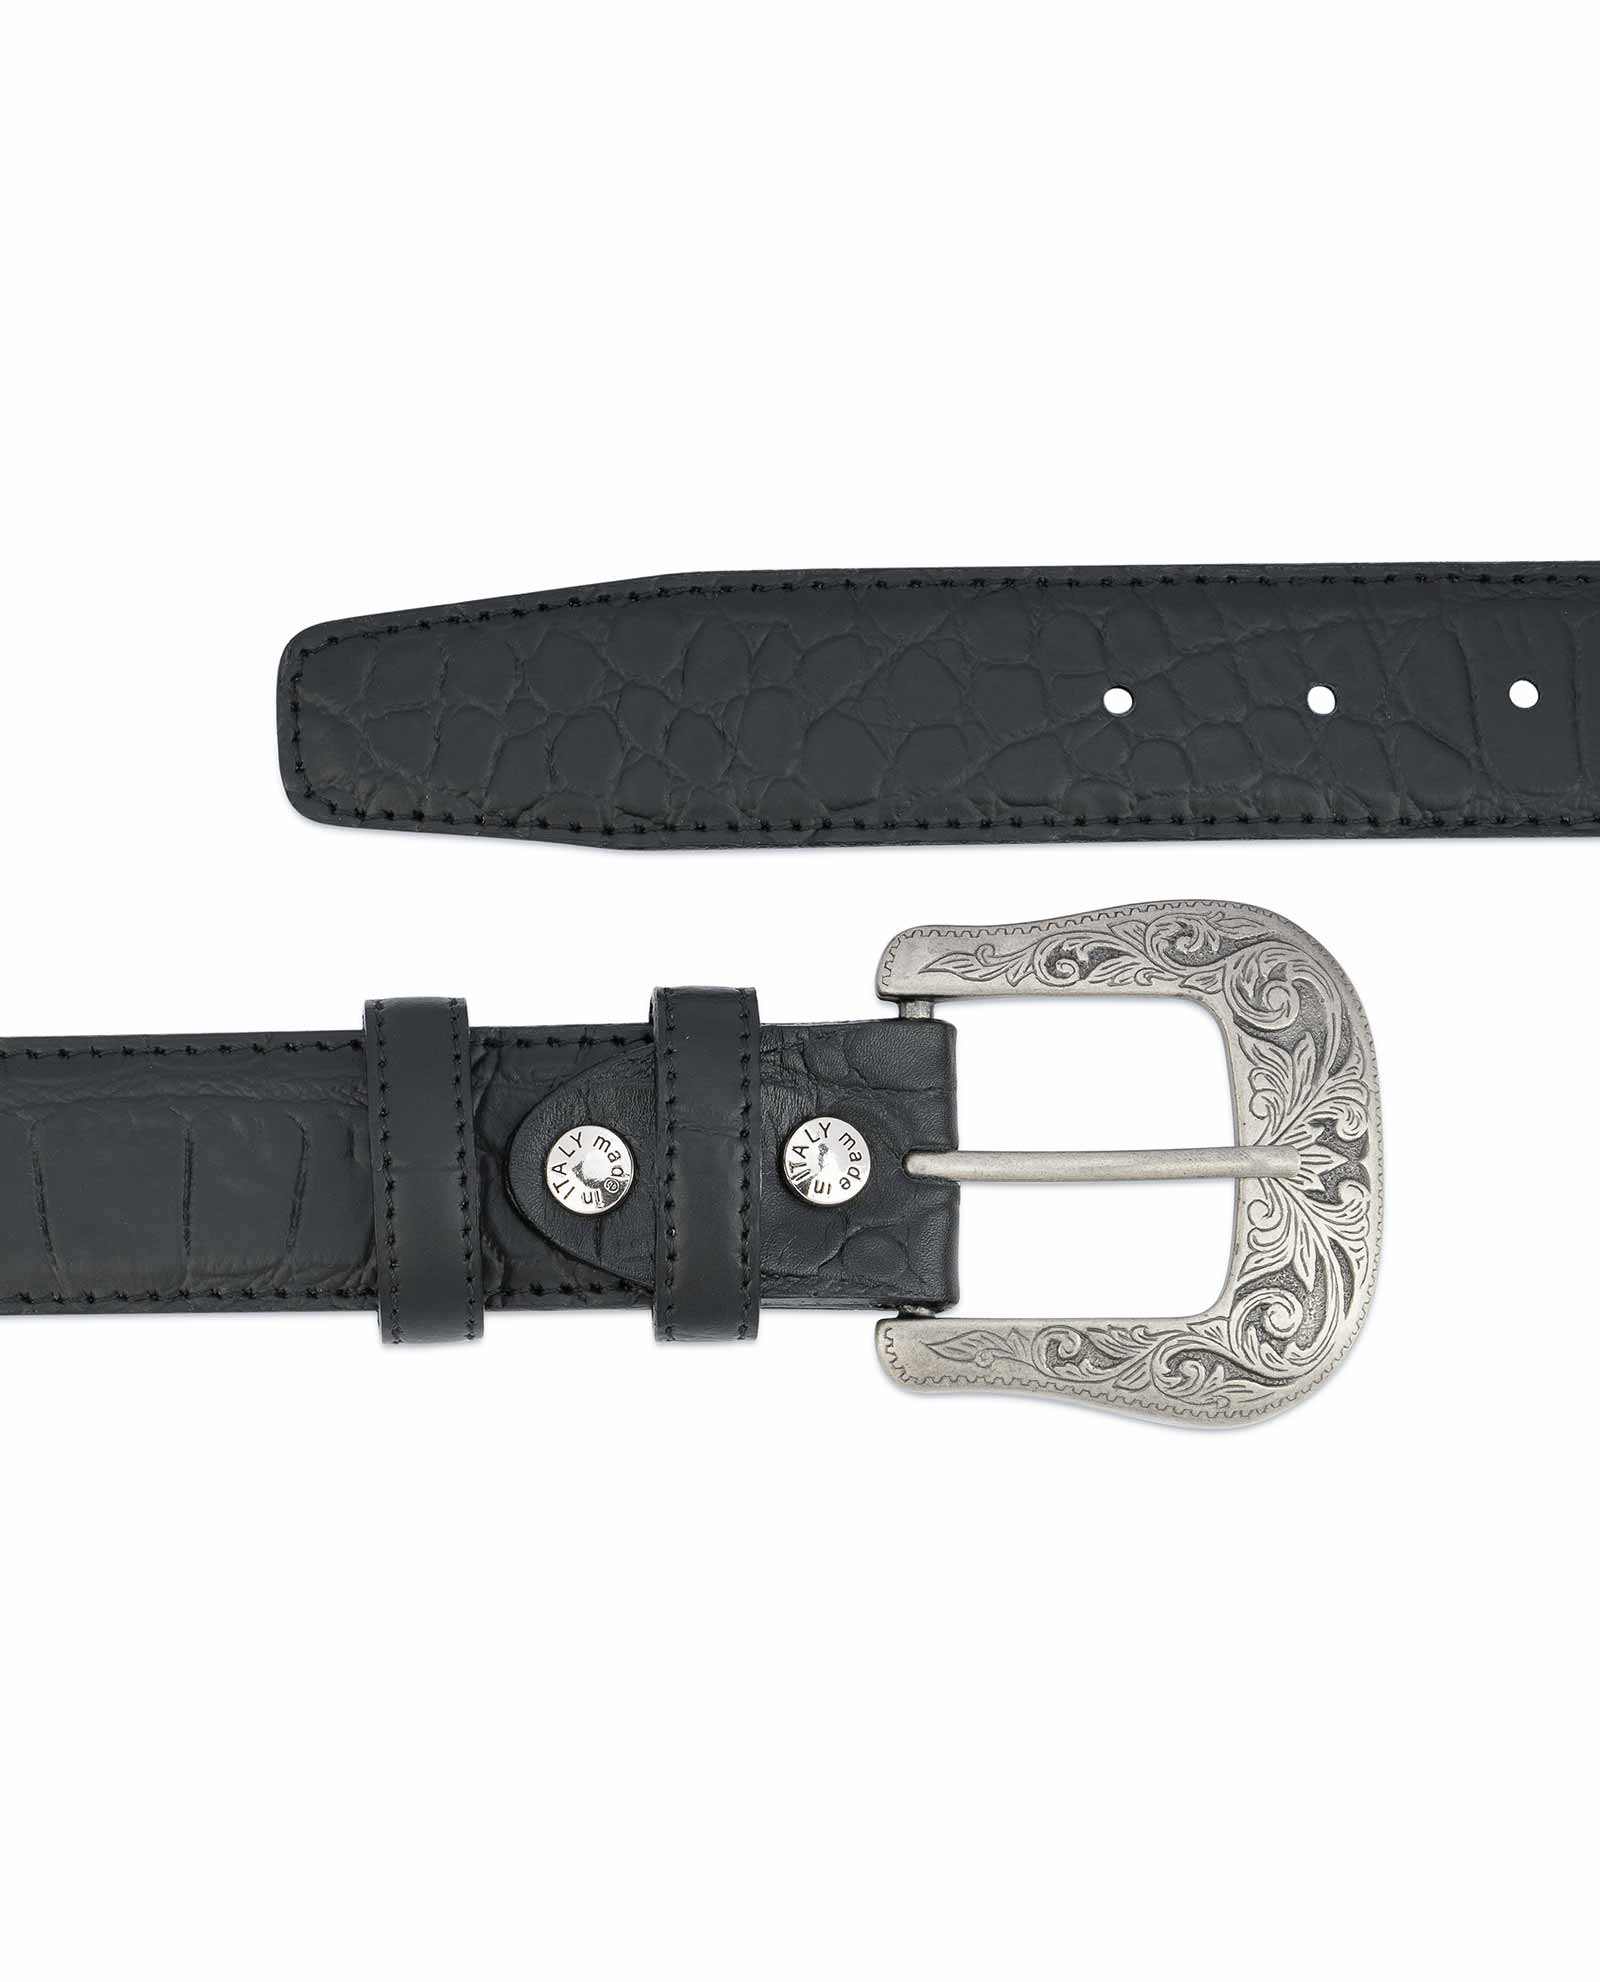 Buy Black Western Belt Mens | Crocodile Embossed Leather ...